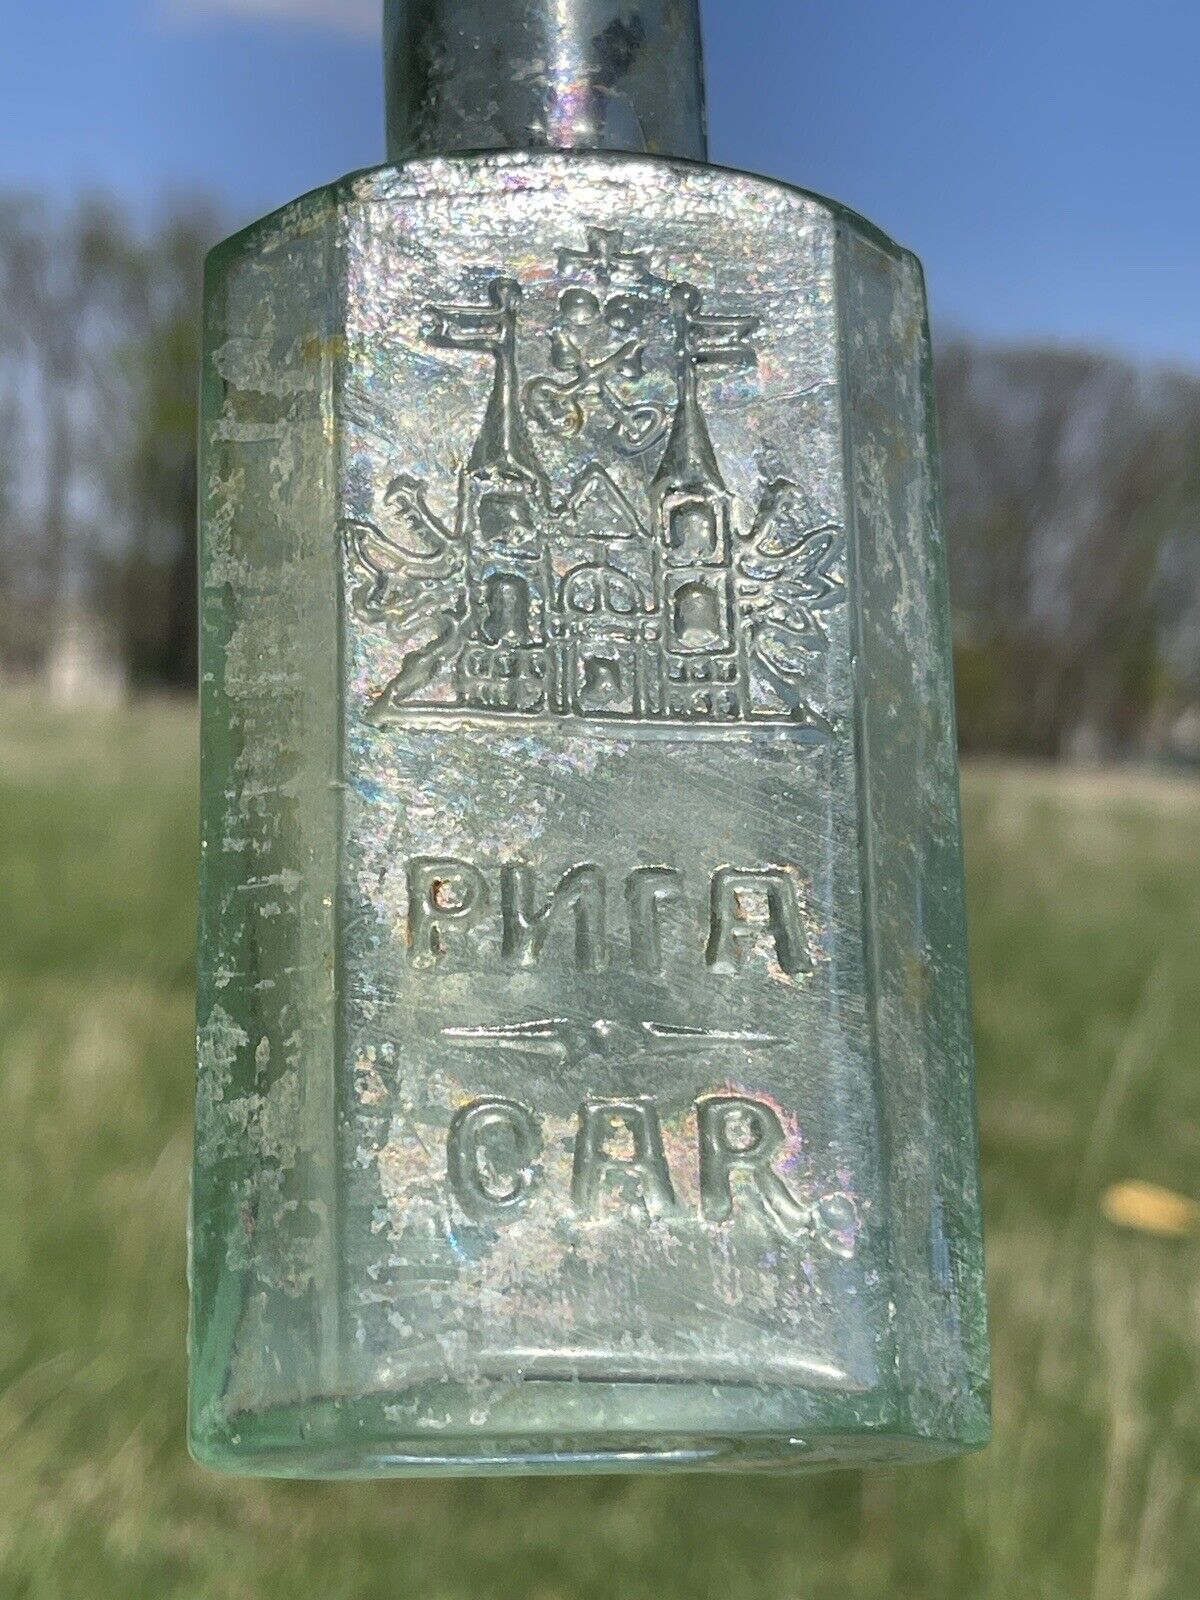 Antique old bottle “RIGA C.A.R” 19th century.